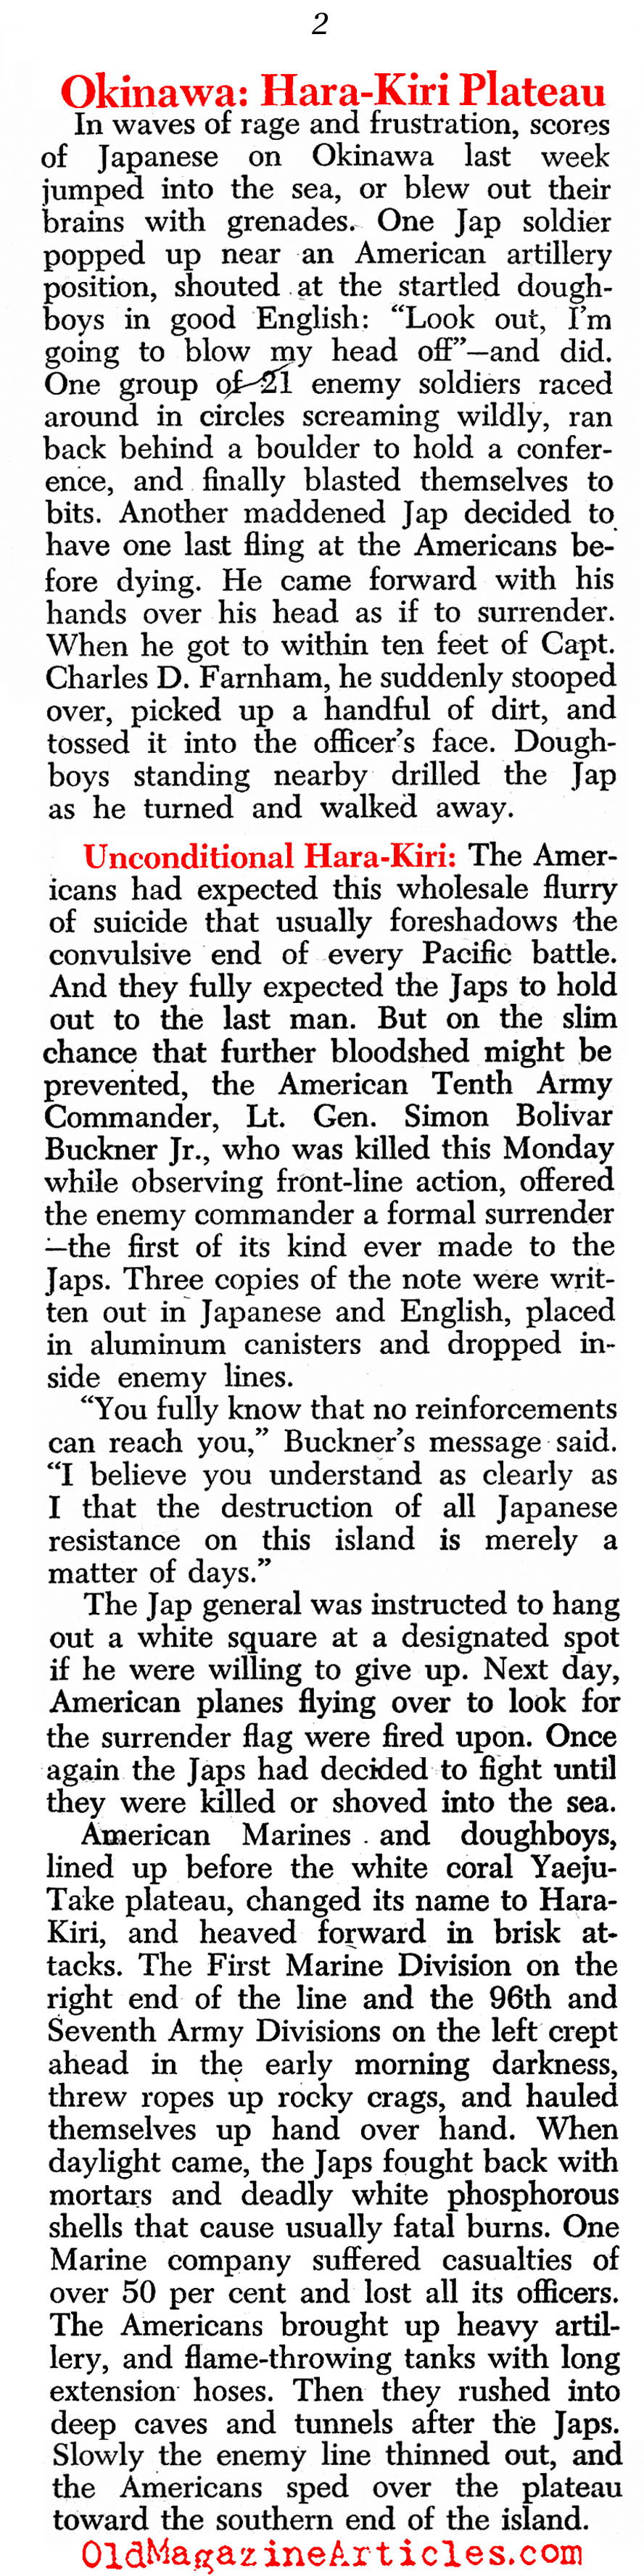 Their Kamikaze Defense (Newsweek Magazine, 1945)